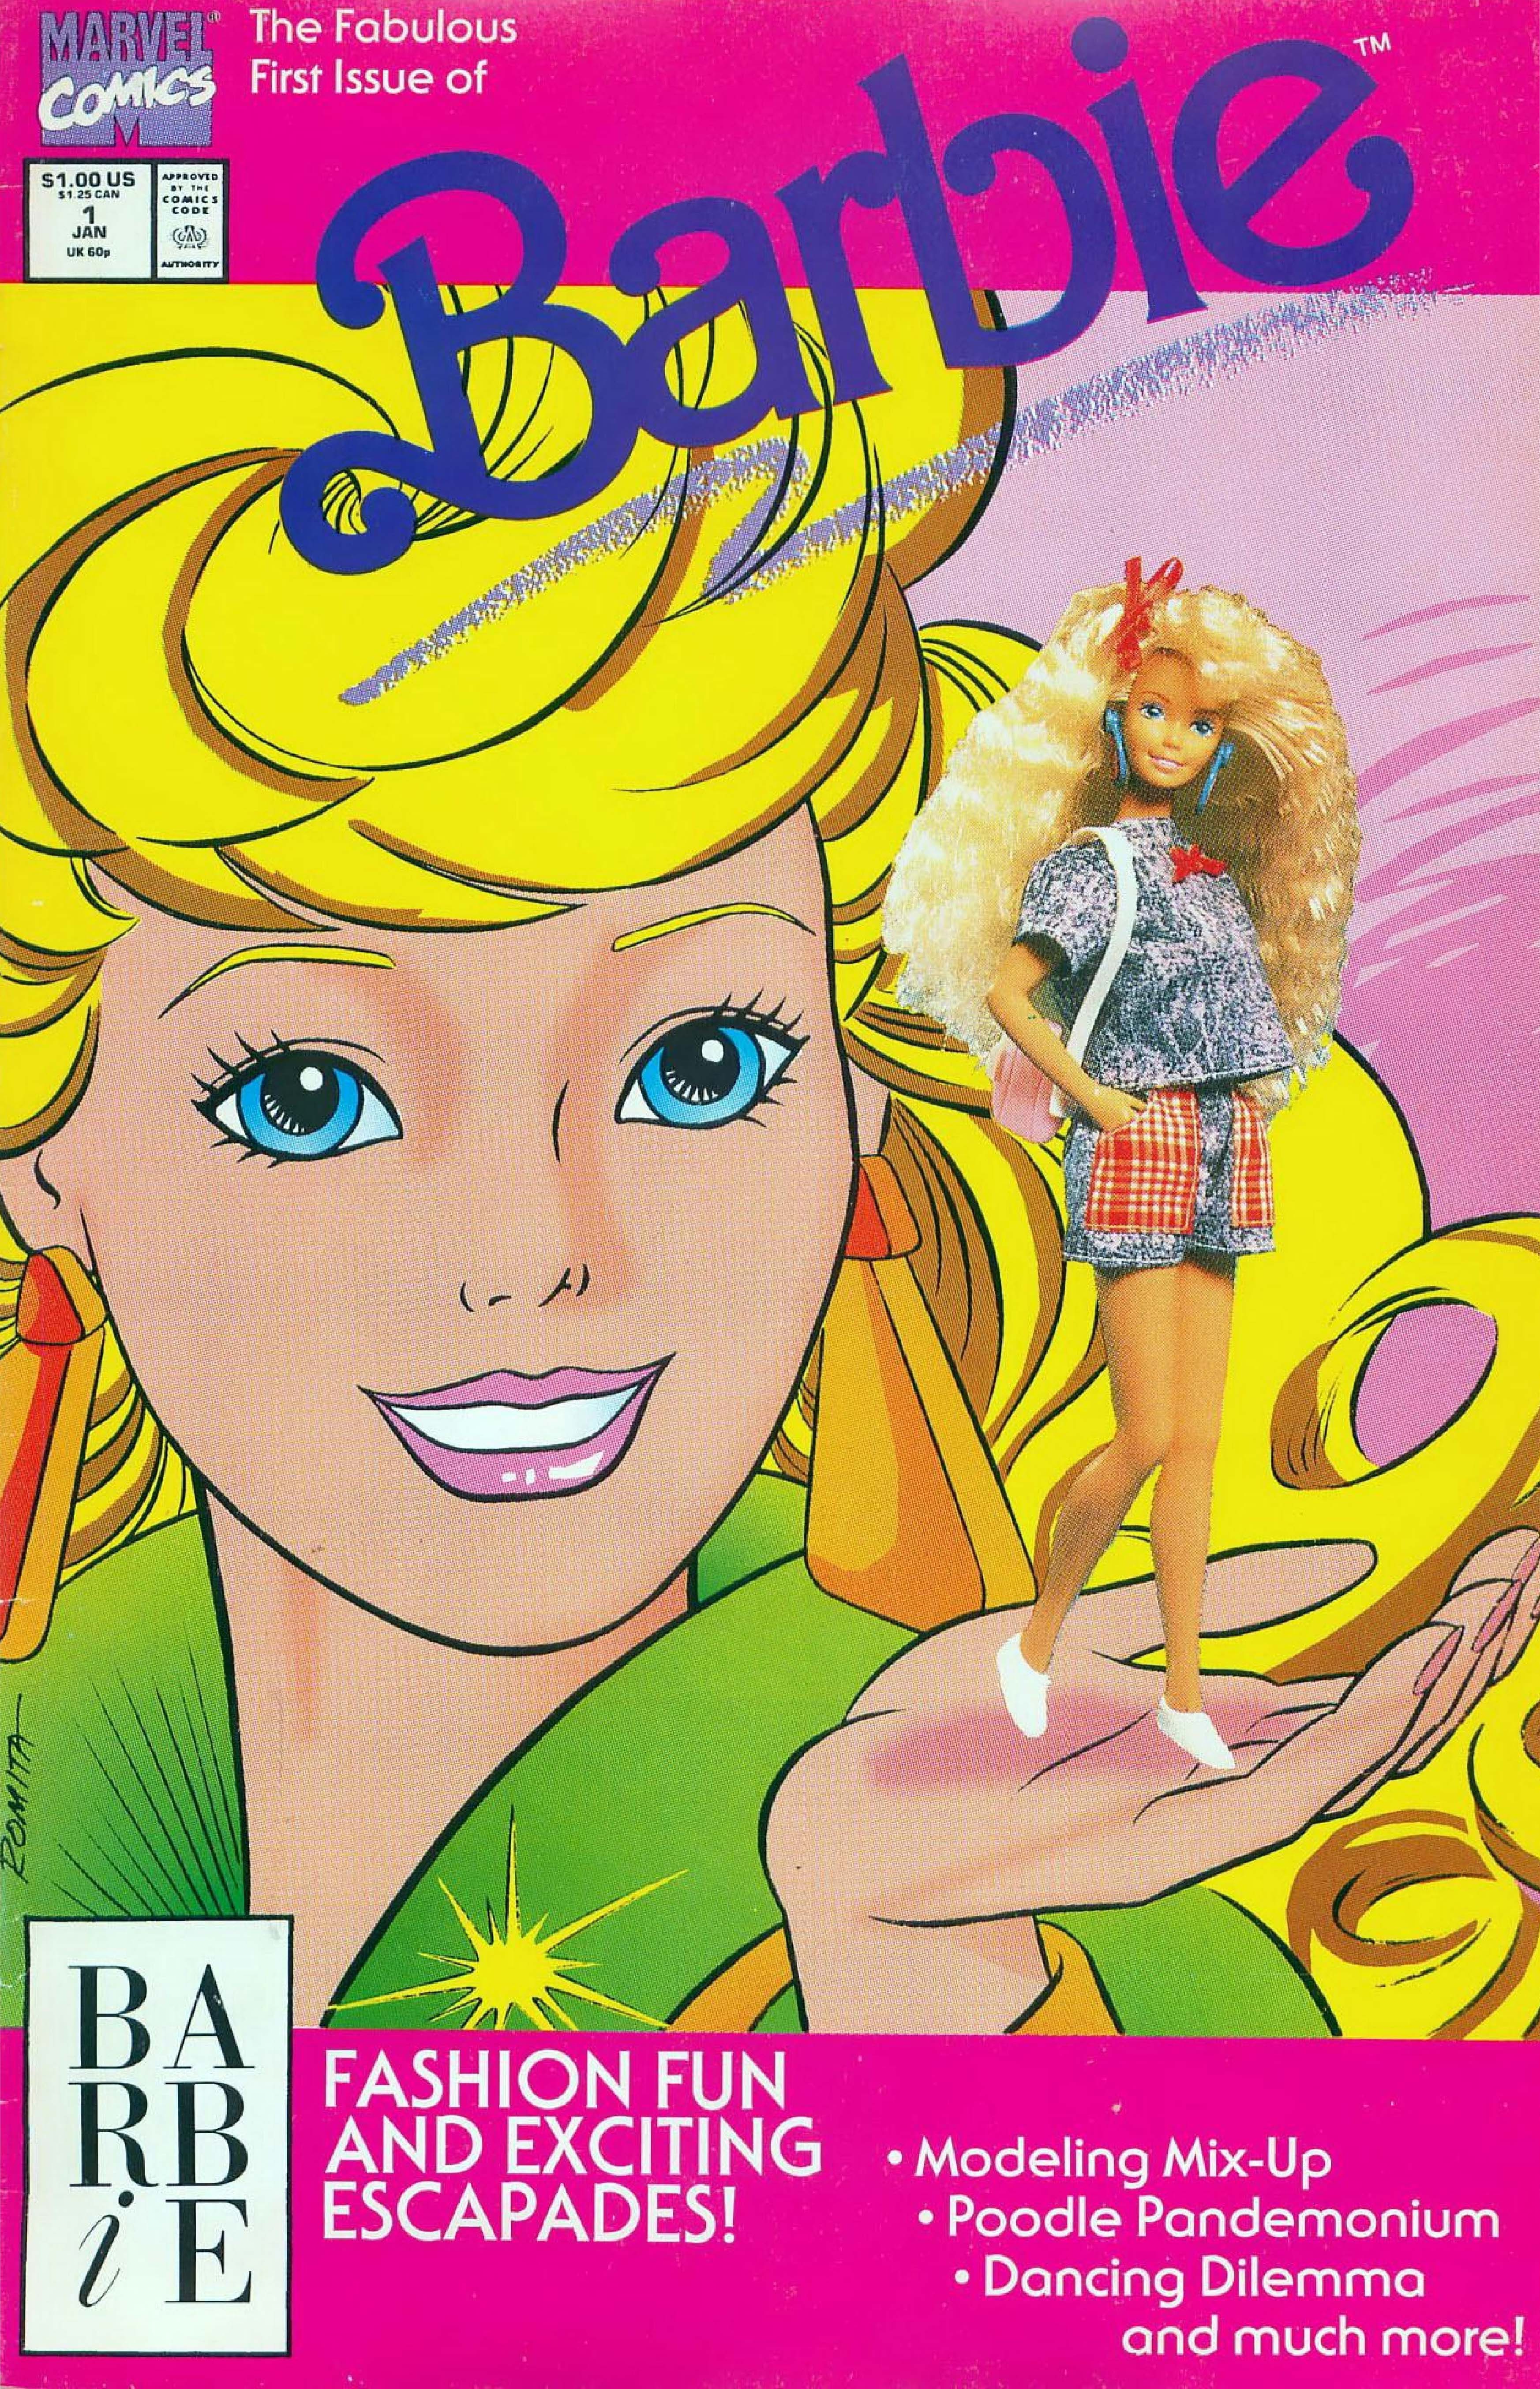 La portada de Barbie nº 1.